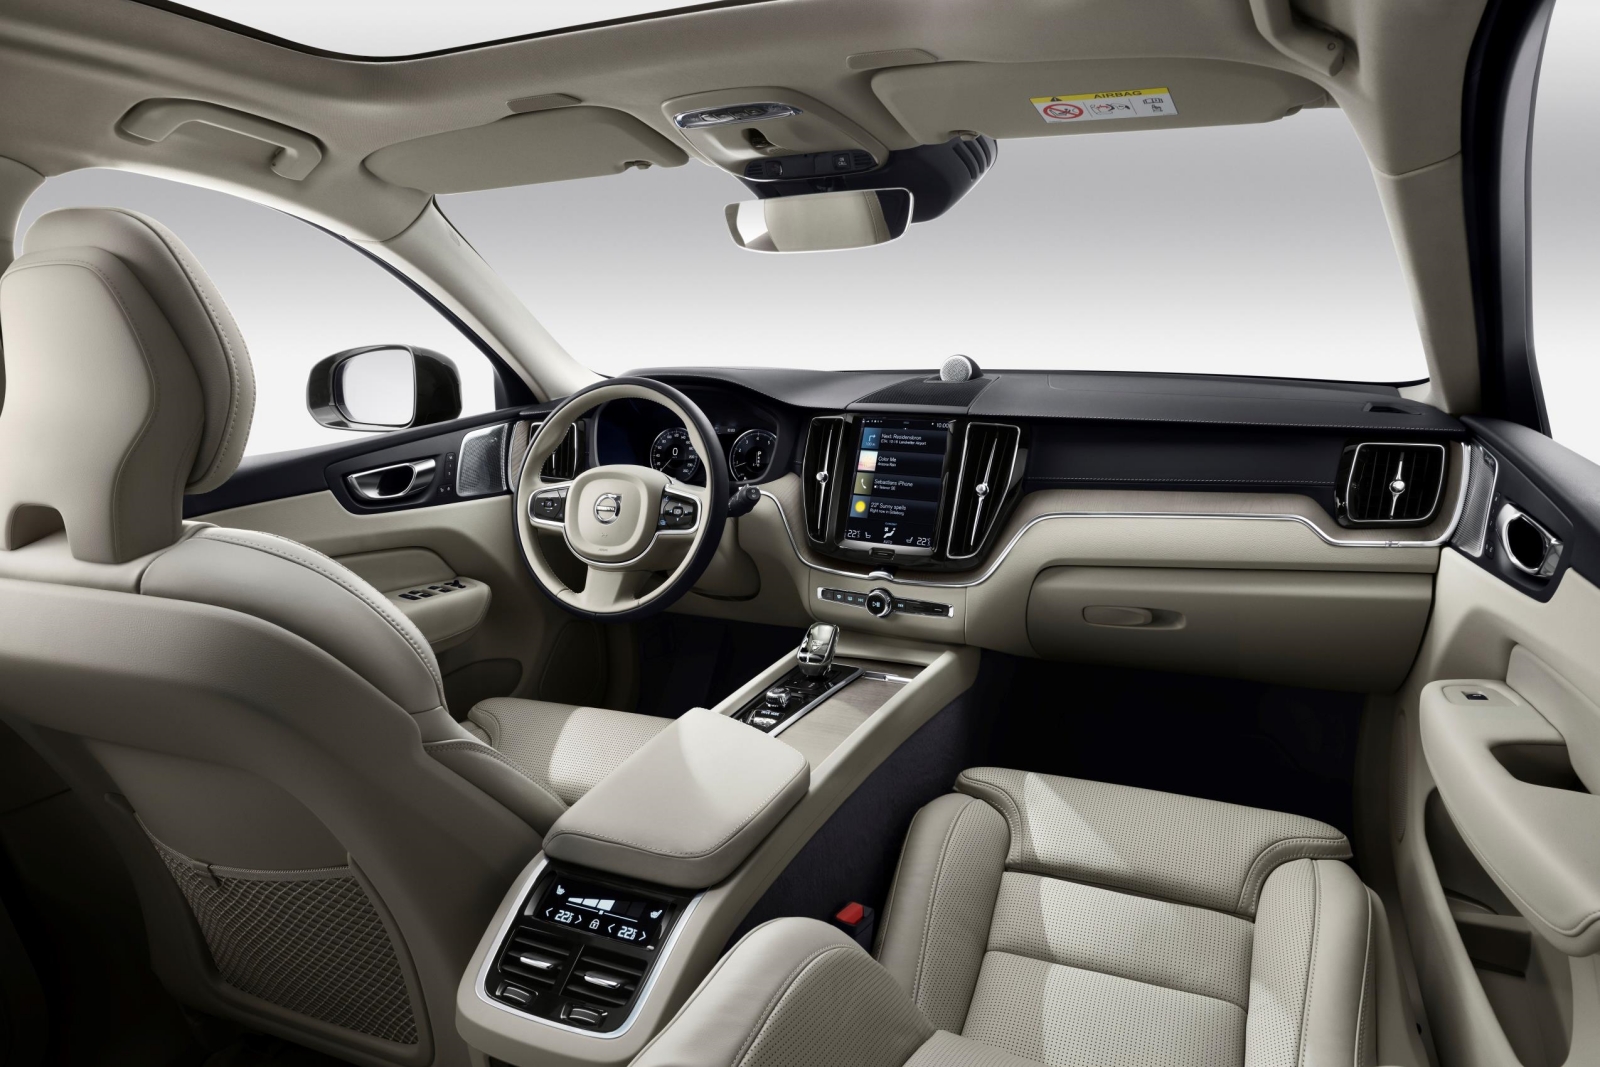 tierra principal miembro Expansión Nuevo Volvo XC60 Recharge T6 AWD: misma autonomía eléctrica, pero más  asequible - Novedades - Híbridos y Eléctricos | Coches eléctricos, híbridos  enchufables